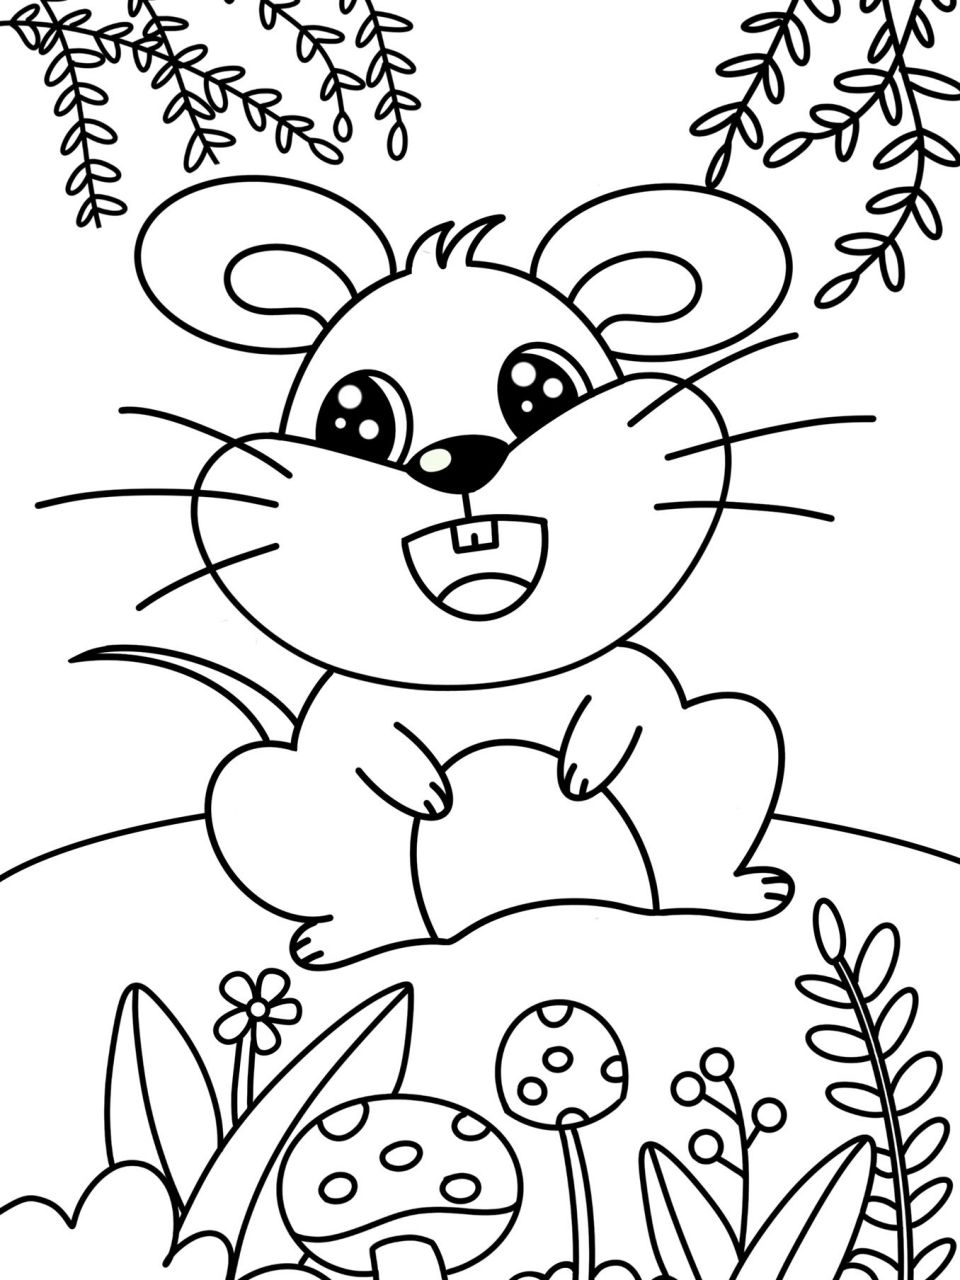 老鼠 创意画 儿童画 简笔画 有线稿 